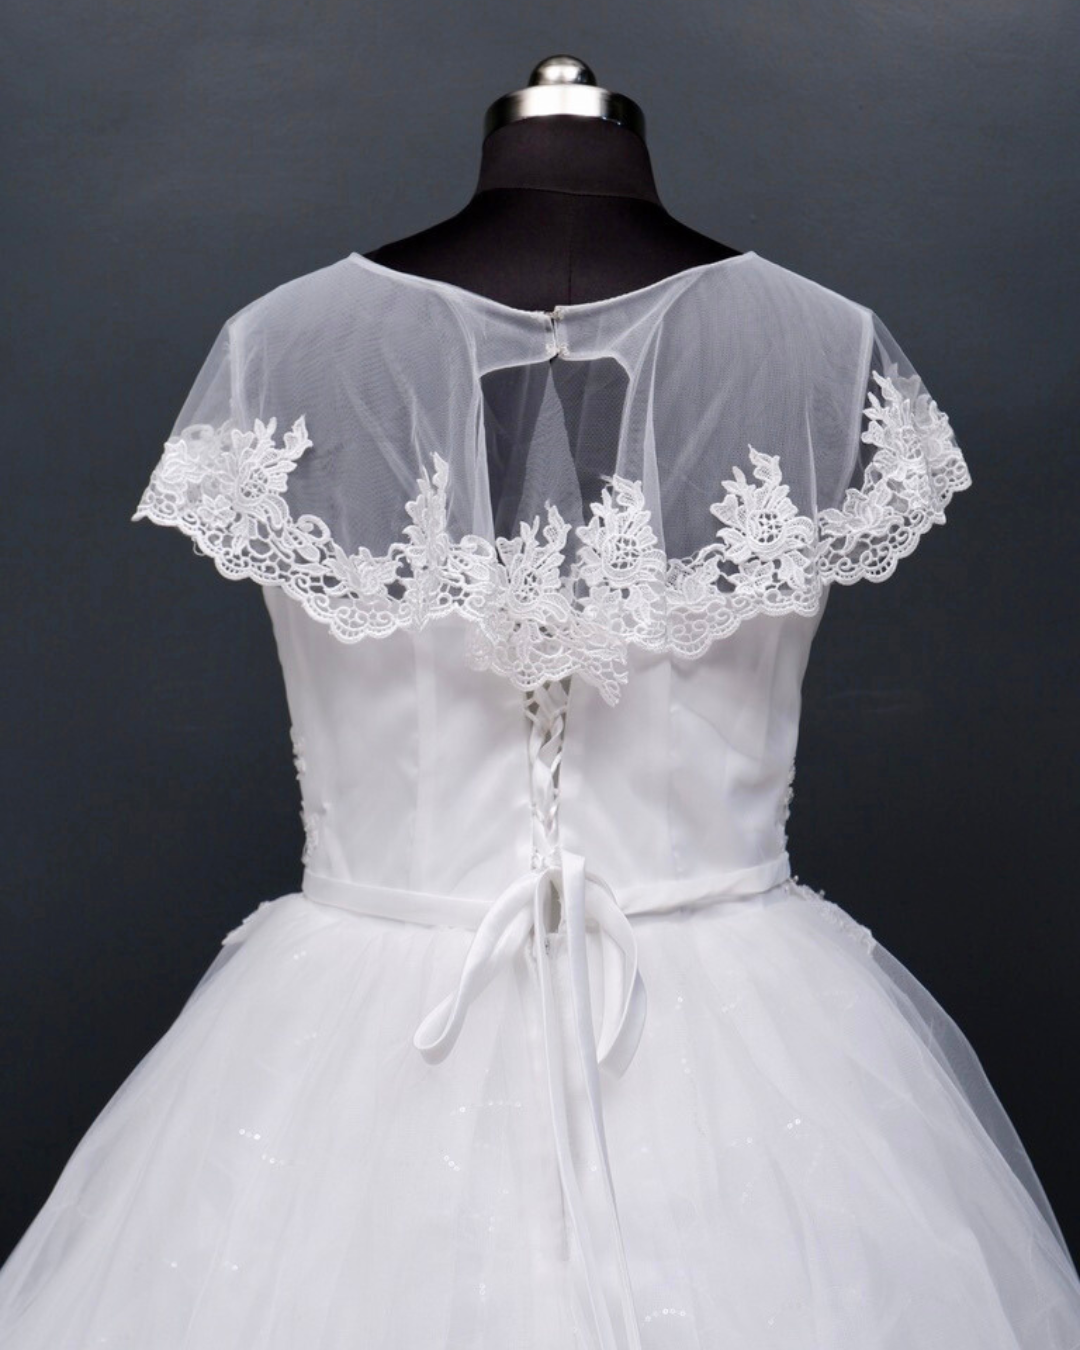 Overcoat White Wedding Dress